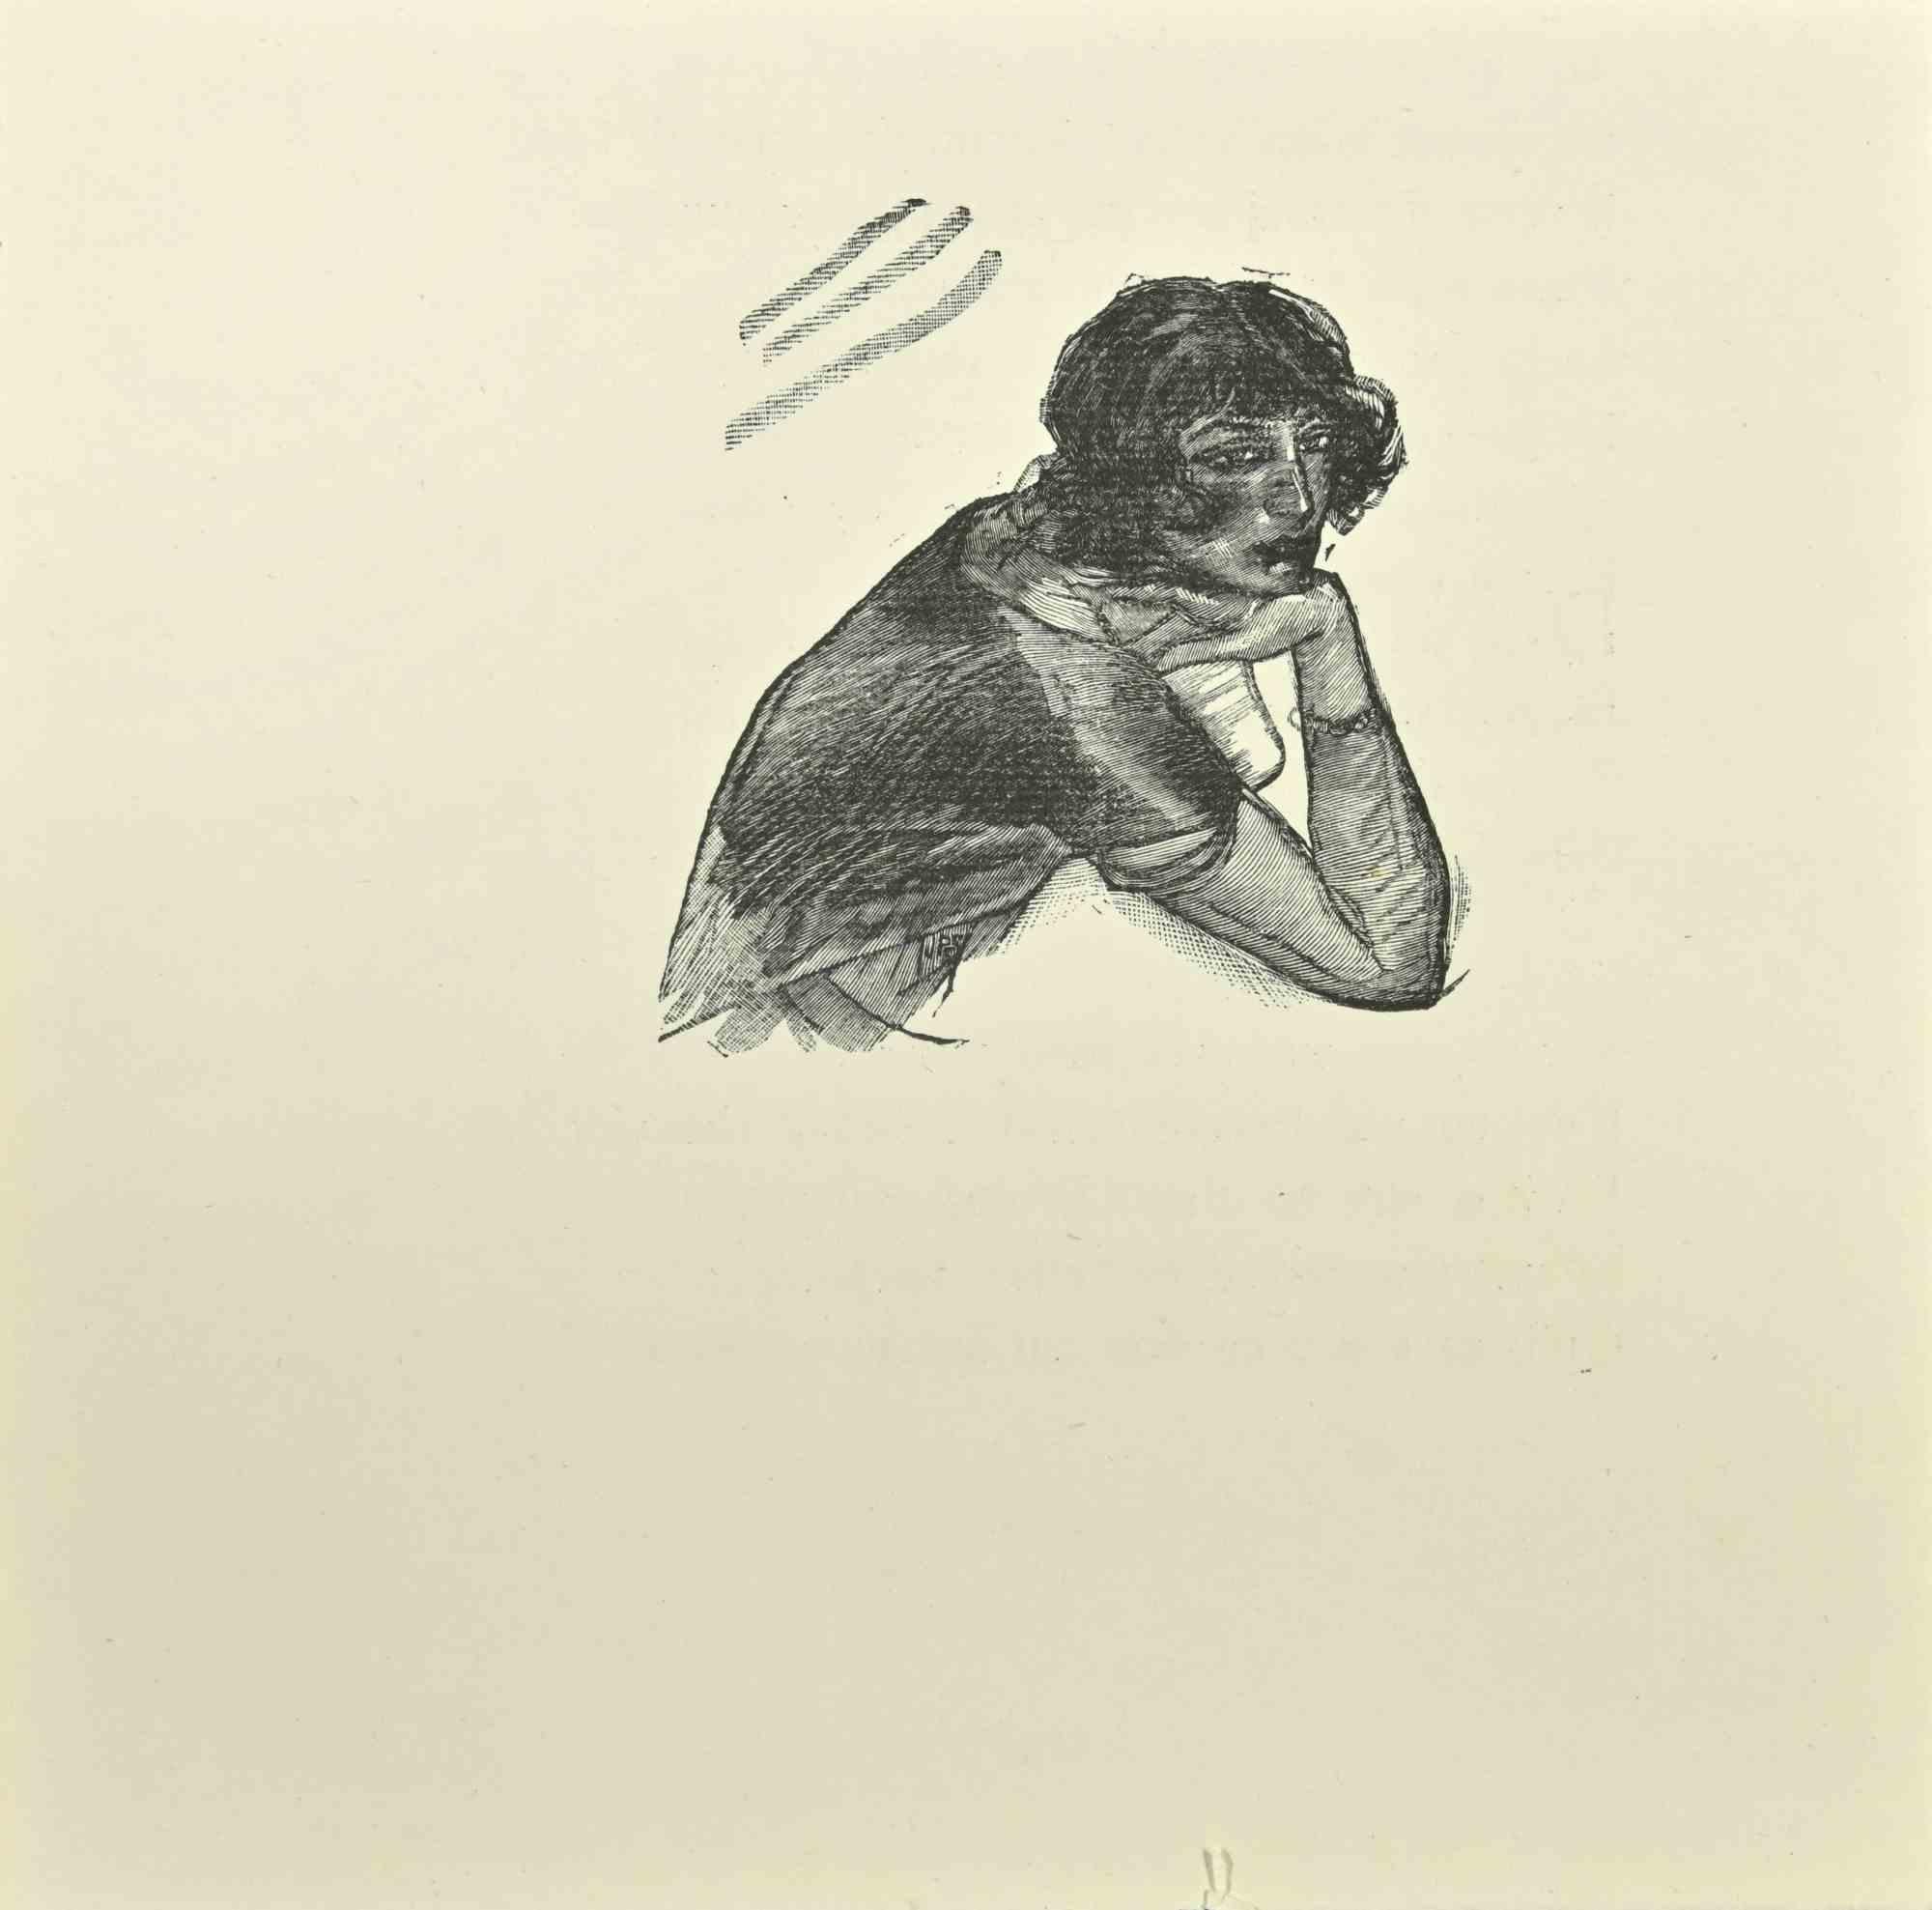 Frau ist ein Holzschnitt auf Papier, der nach Jean Paul Sauget für Maurice Magre's Les Soirs d'Opium realisiert wurde.

Veröffentlicht im Jahr 1921.

Gute Bedingungen.